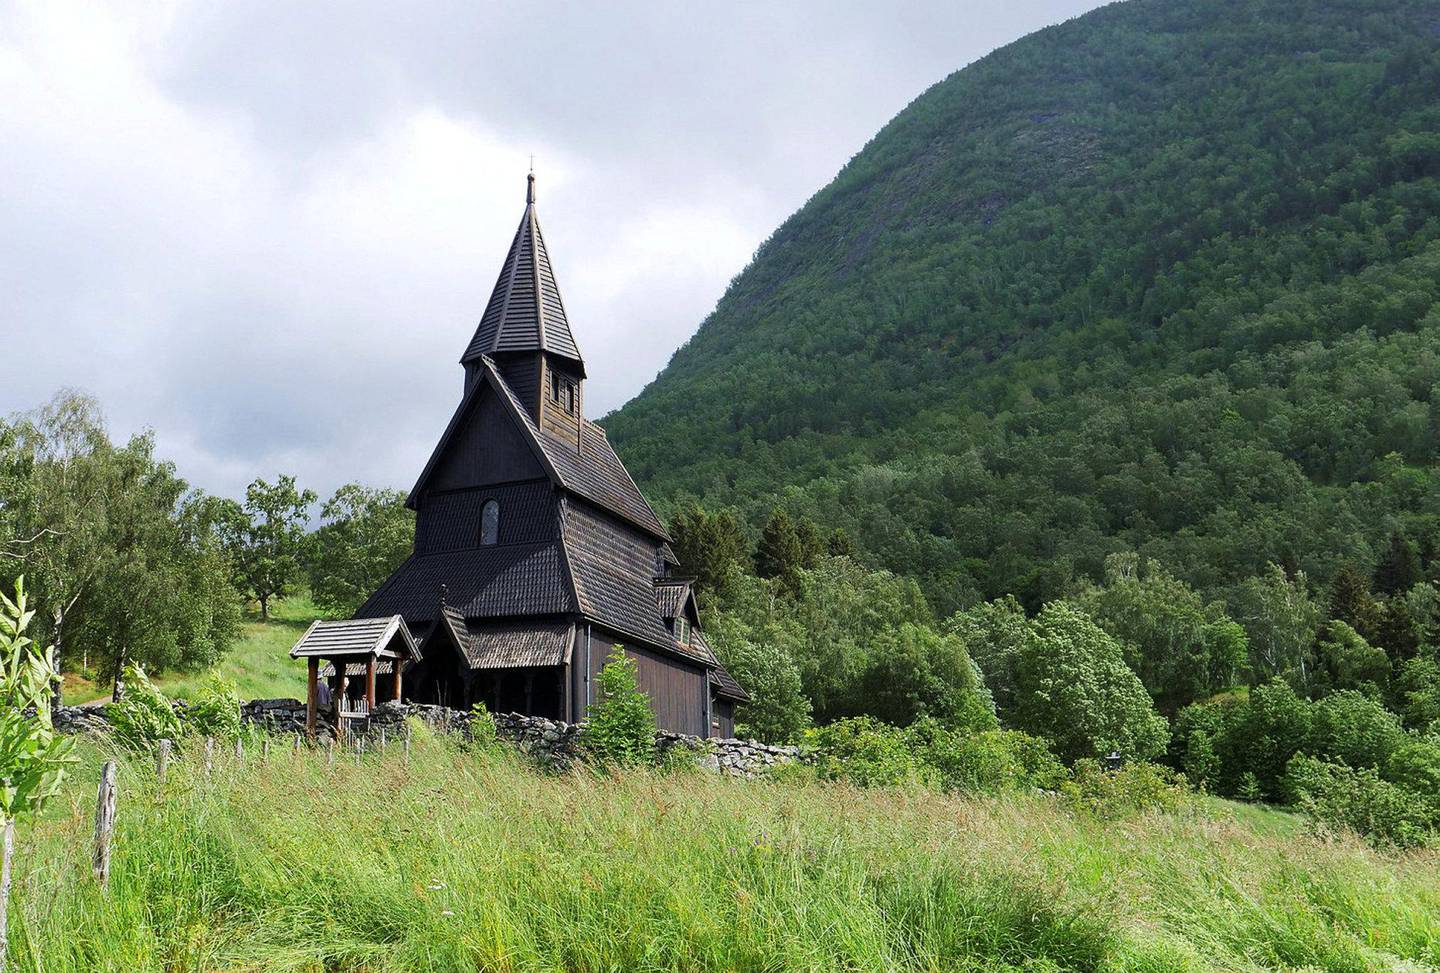 Det finnes flere stavkirker i områdene rundt Sognefjorden, blant annet verdens eldste, Urnes Stavkirke, som har vært på verdensarvlisten i mer enn 40 år. Foto: Martin Lerberg Fossum/NTB scanpix